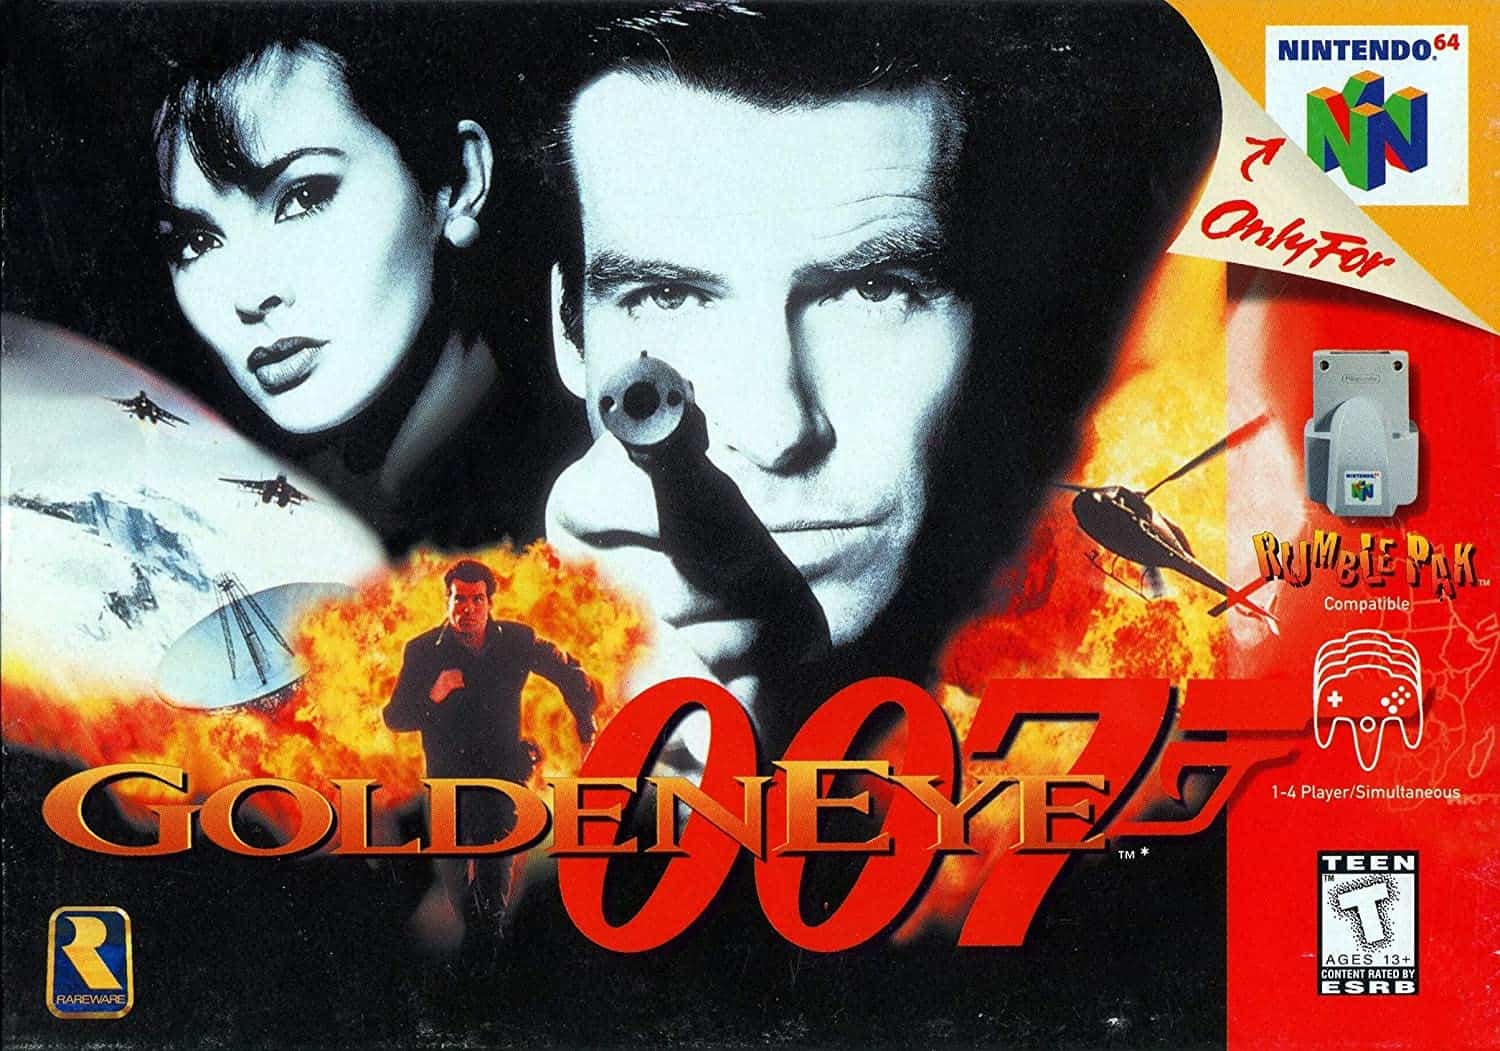 Goldeneye 007 video game for N64